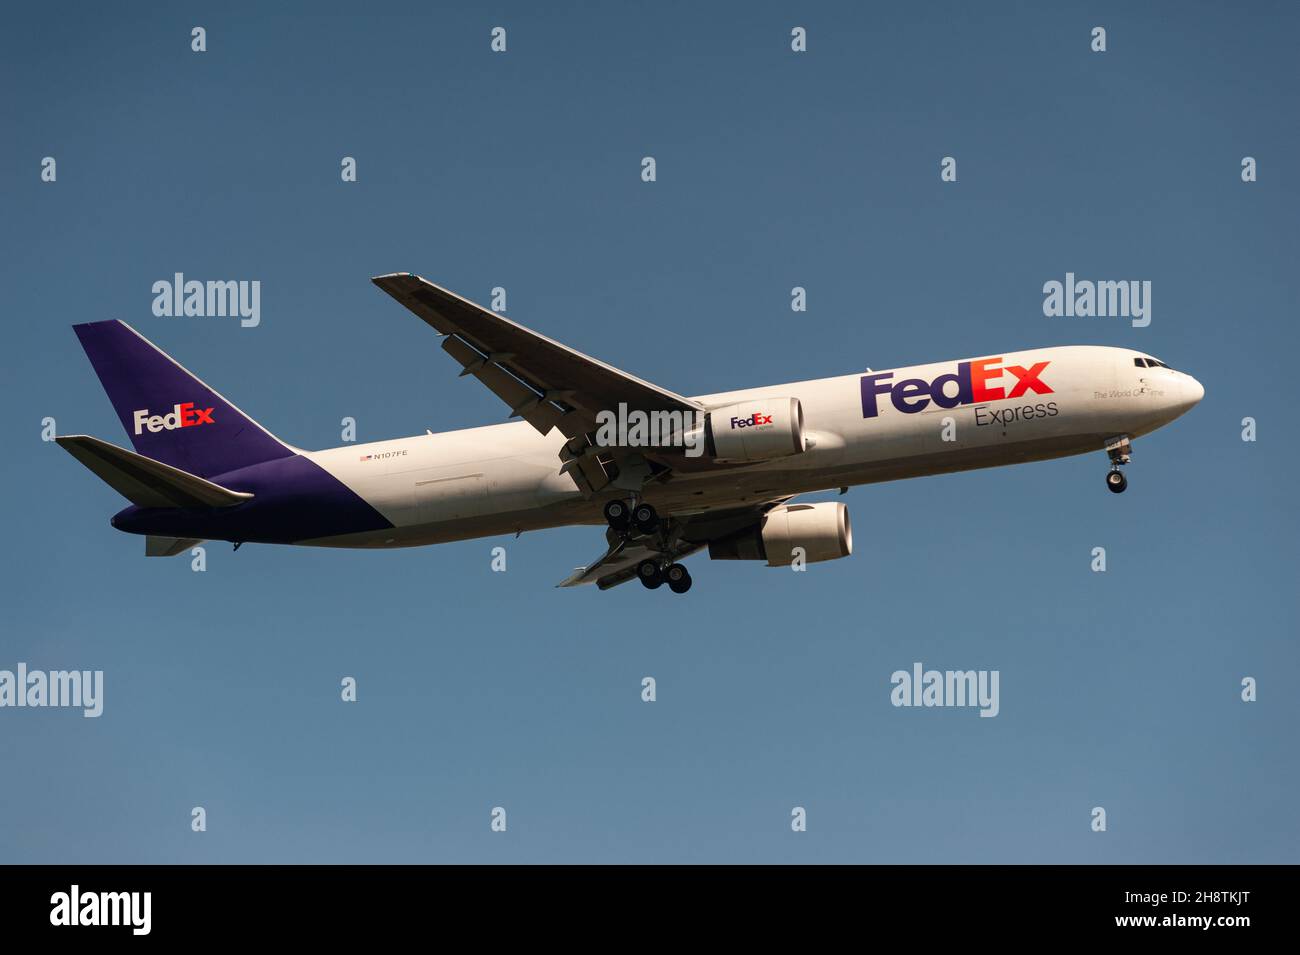 29.11.2021, Singapore, Repubblica di Singapore, Asia - Un aereo da freighter Federal Express (FedEx) 767-300F si avvicina all'aeroporto di Changi per l'atterraggio. Foto Stock